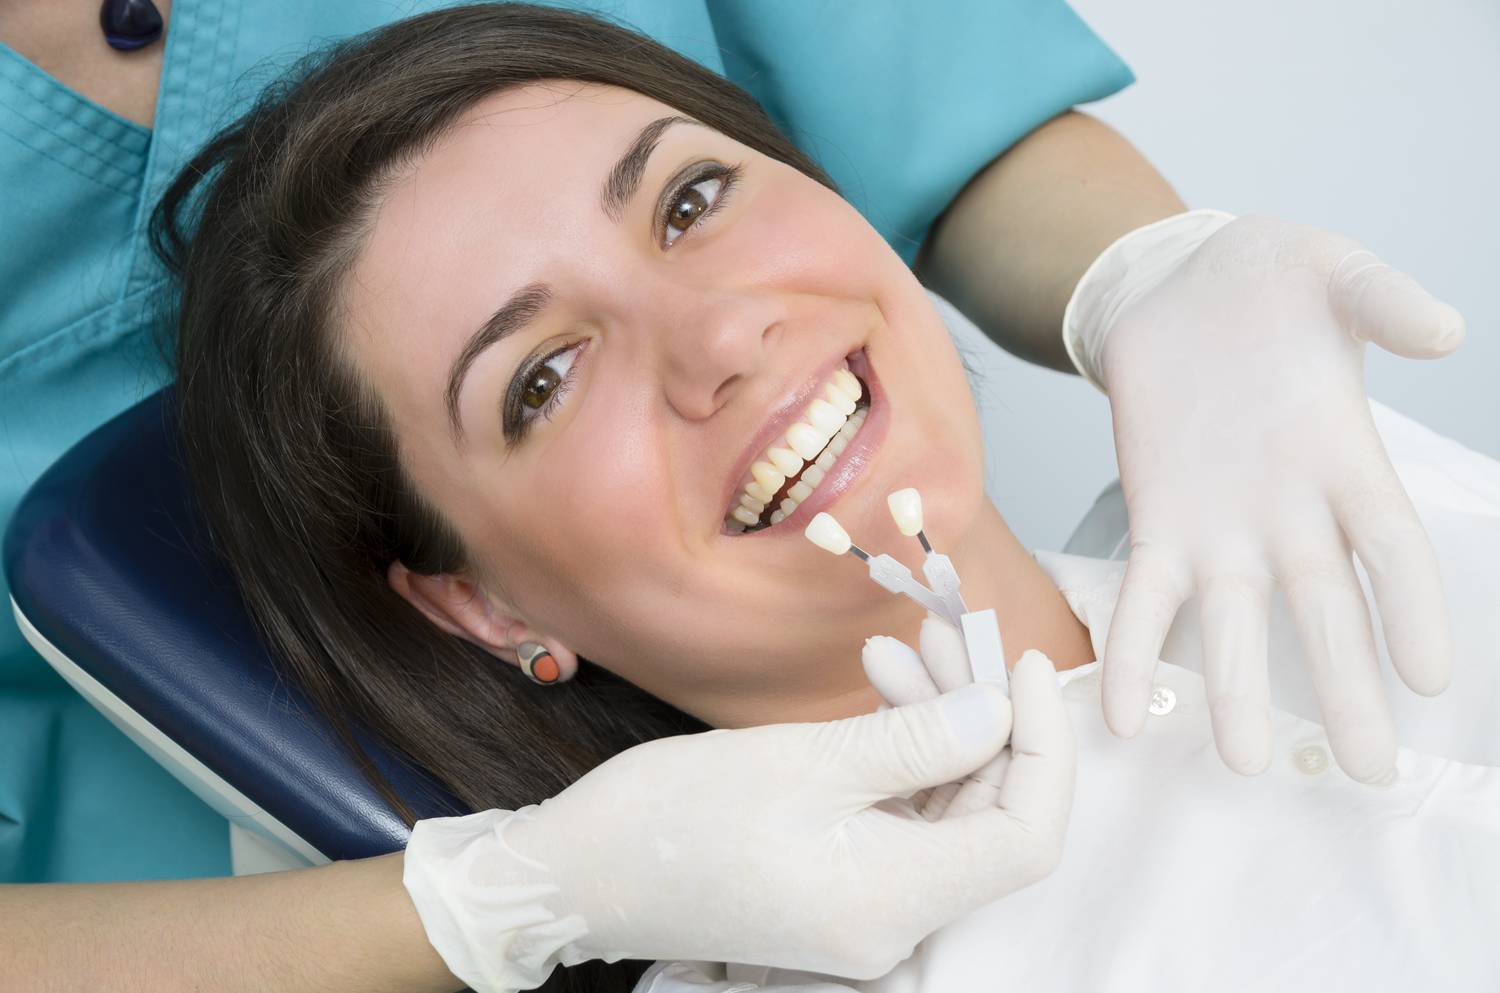 Какие услуги наиболее популярны в стоматологии?